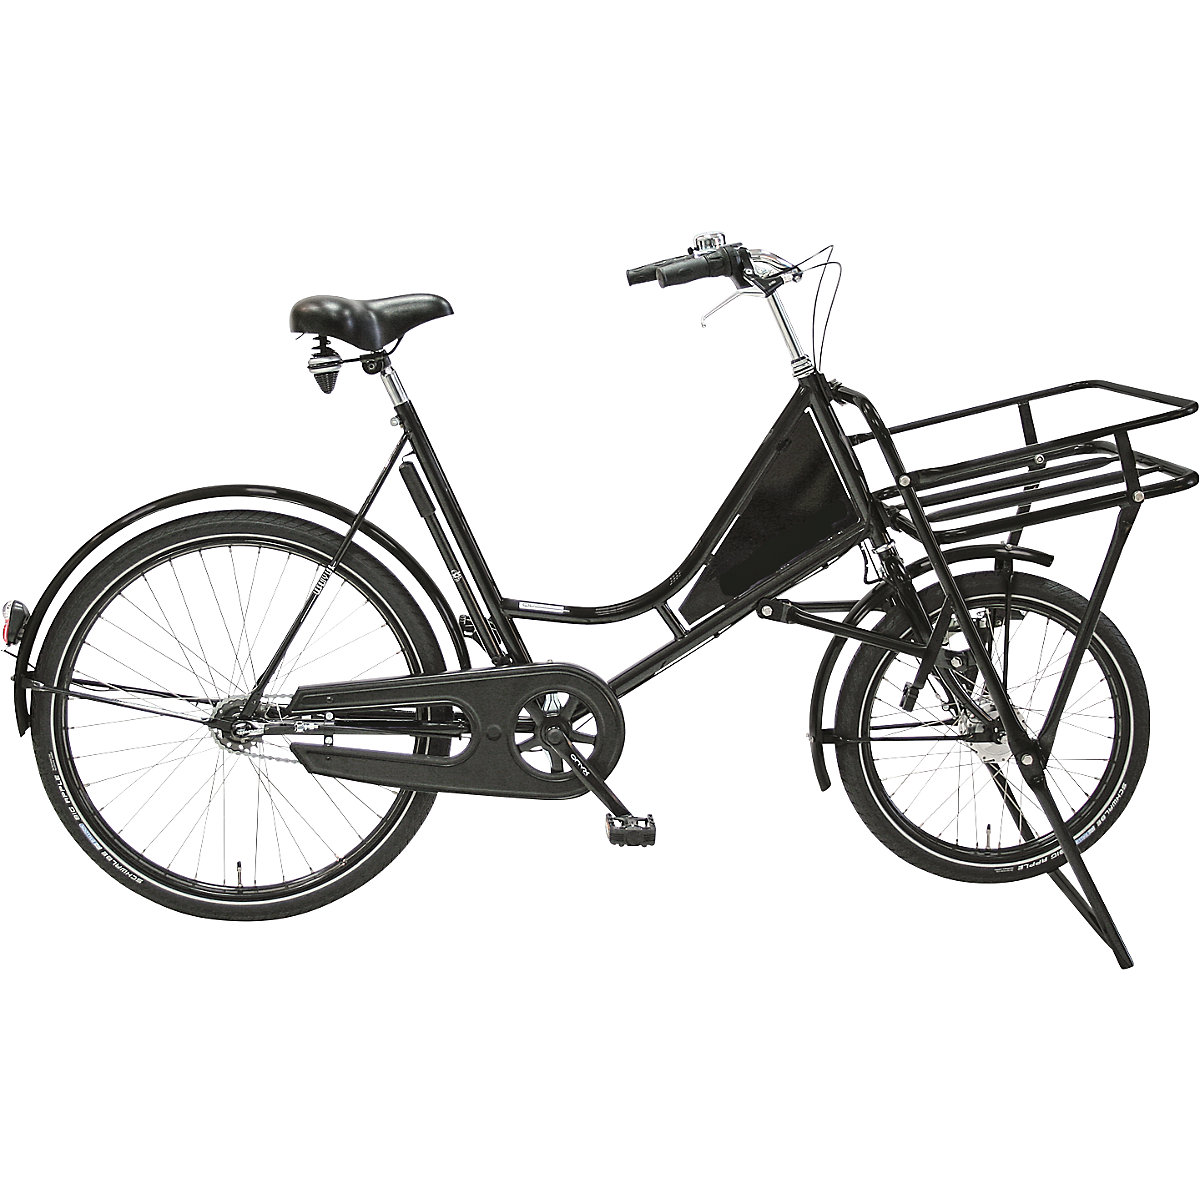 Bicicleta de carga CLASSIC, bicicleta de taller para el transporte dentro de la empresa, carga máx. 150 kg, a partir de 5 unid.-4